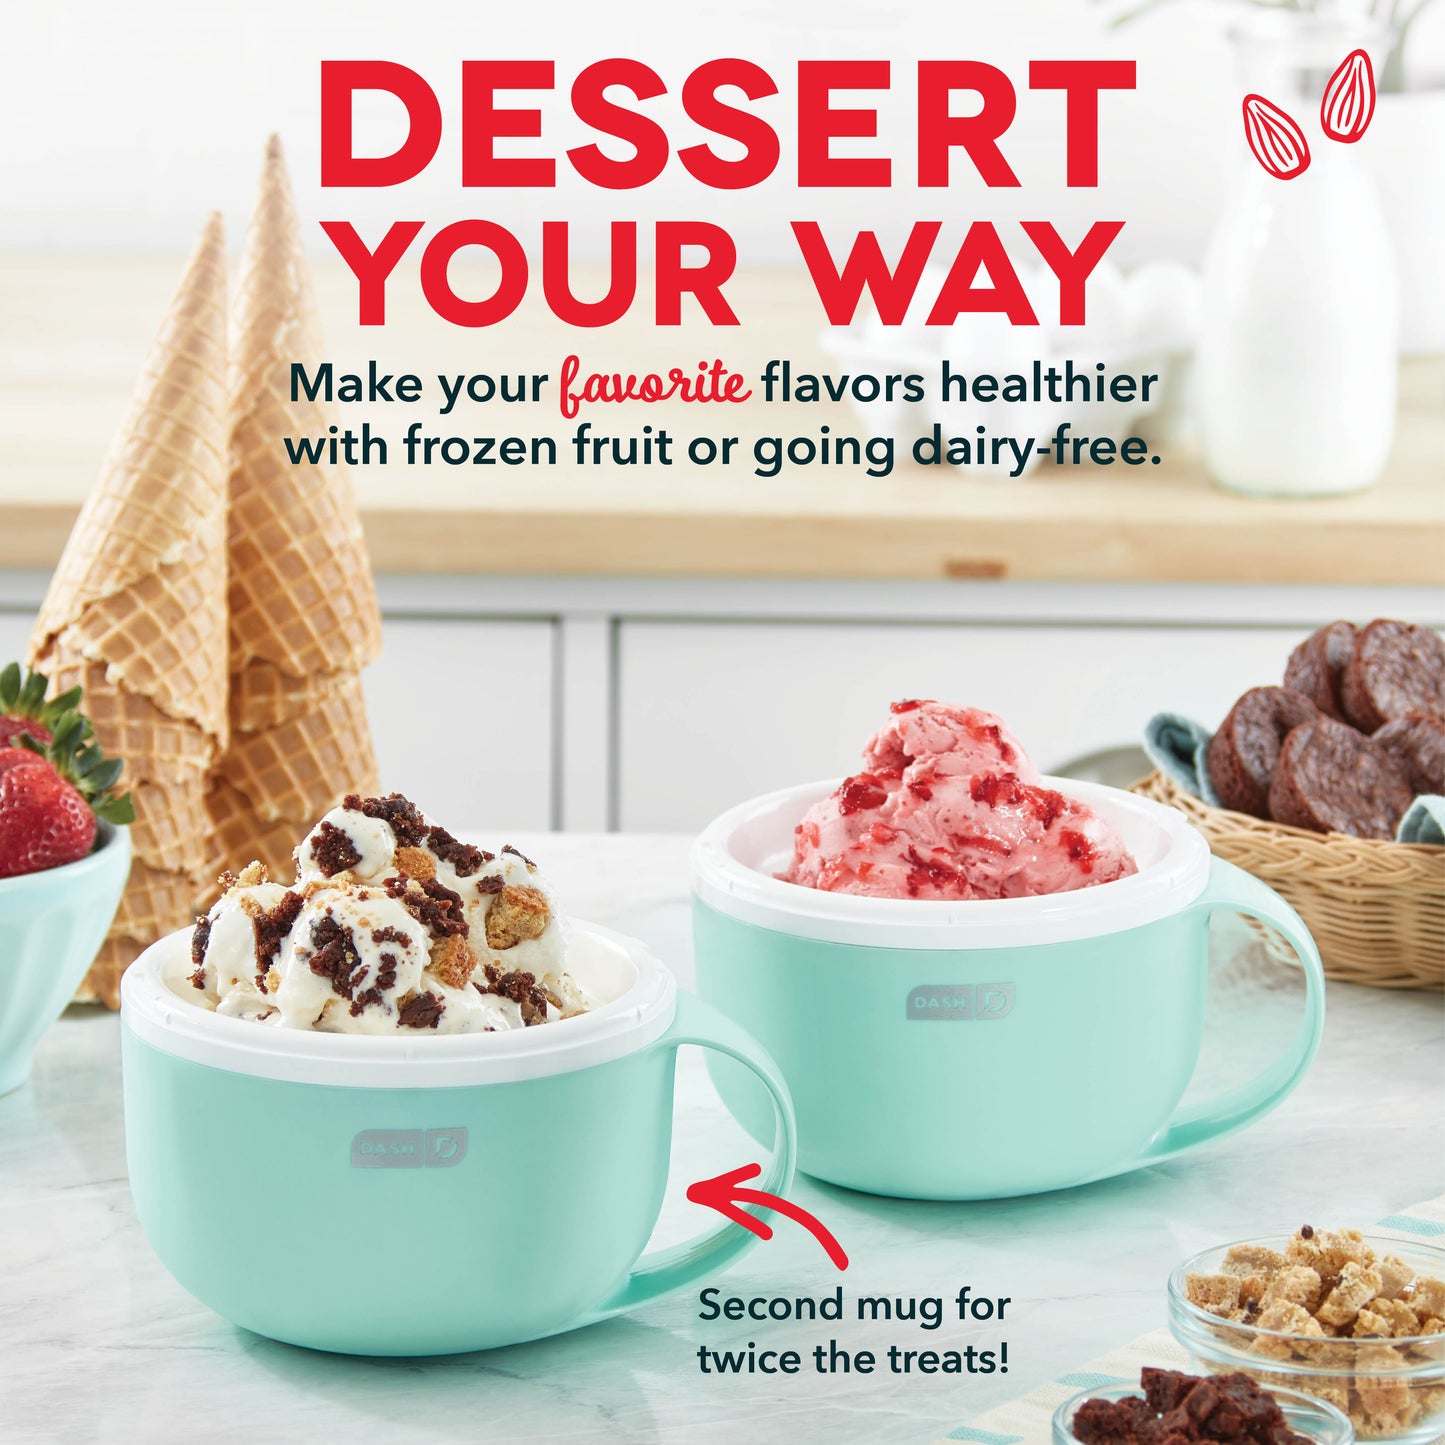 Who has a Dash MyMug ice cream maker? : r/ketorecipes